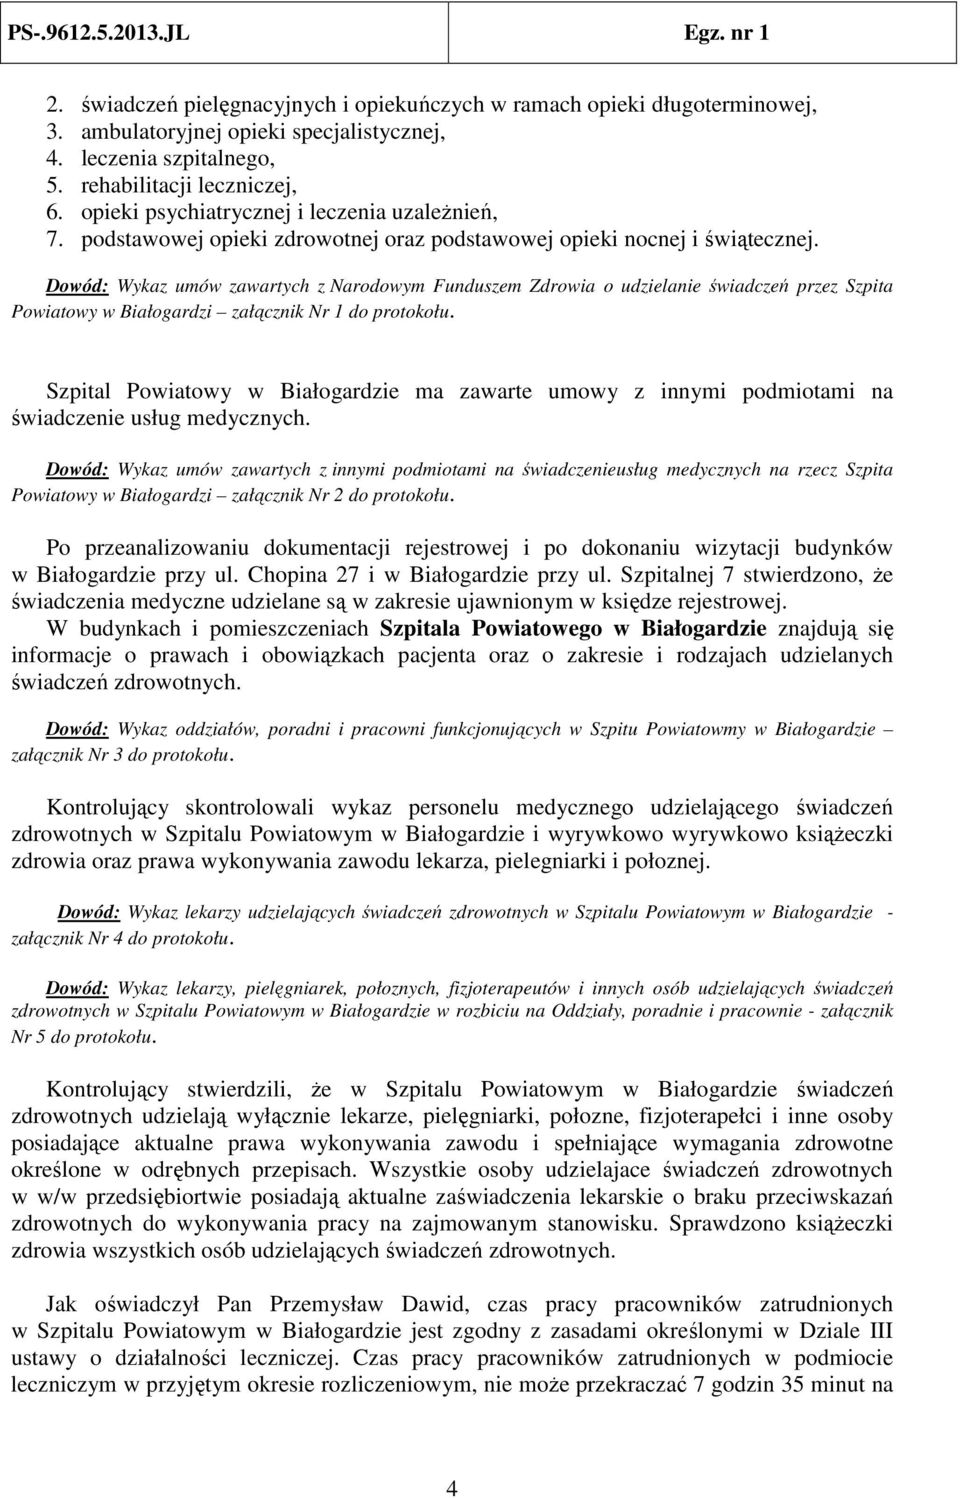 Dowód: Wykaz umów zawartych z Narodowym Funduszem Zdrowia o udzielanie świadczeń przez Szpita Powiatowy w Białogardzi załącznik Nr 1 do protokołu.